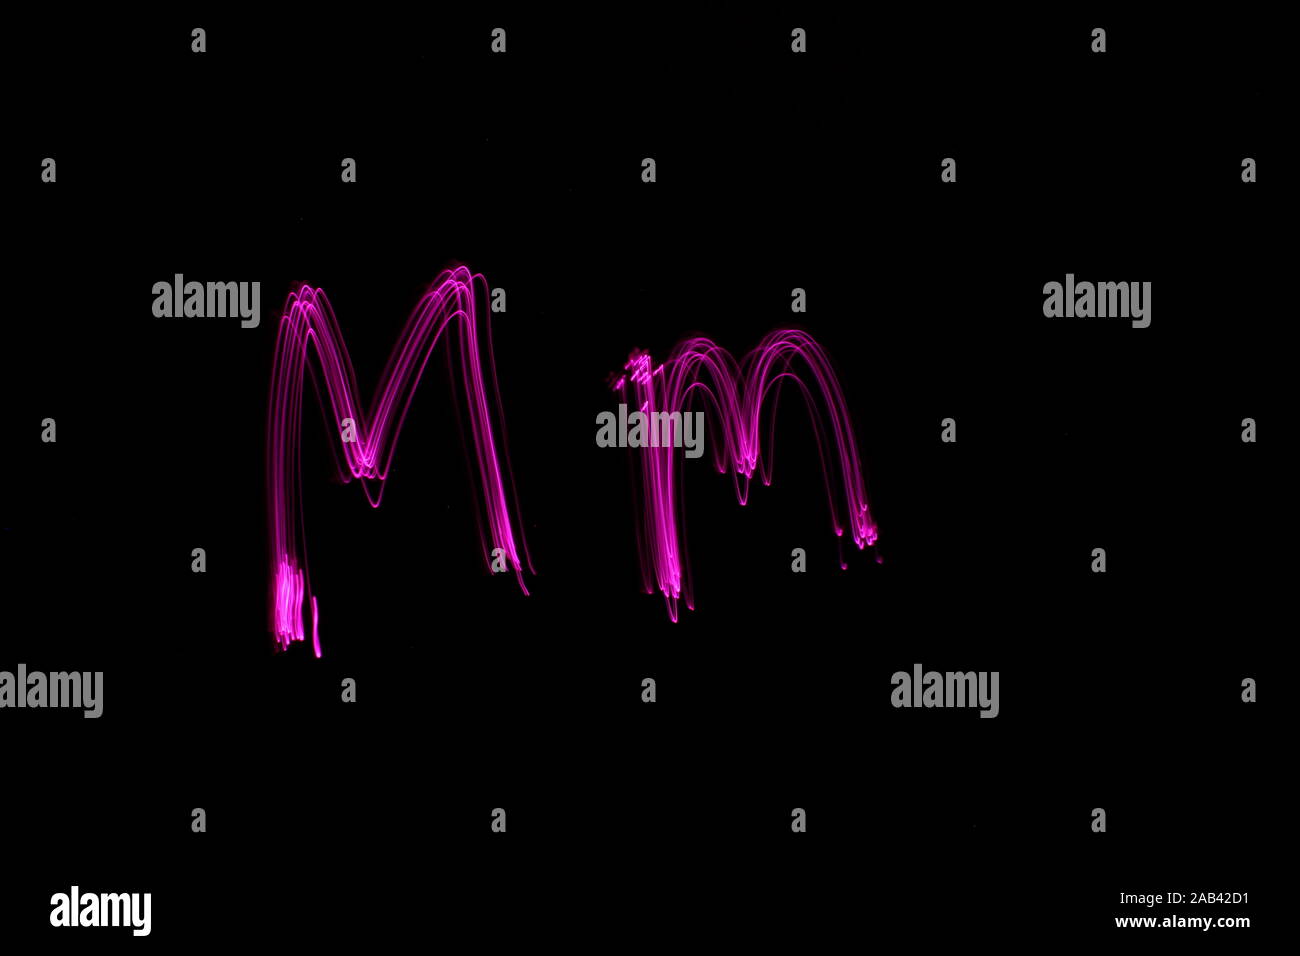 Une longue exposition photo de la lettre m en couleur néon rose, en majuscules et minuscules, motif de lignes parallèles sur un fond noir. La lumière pa Banque D'Images